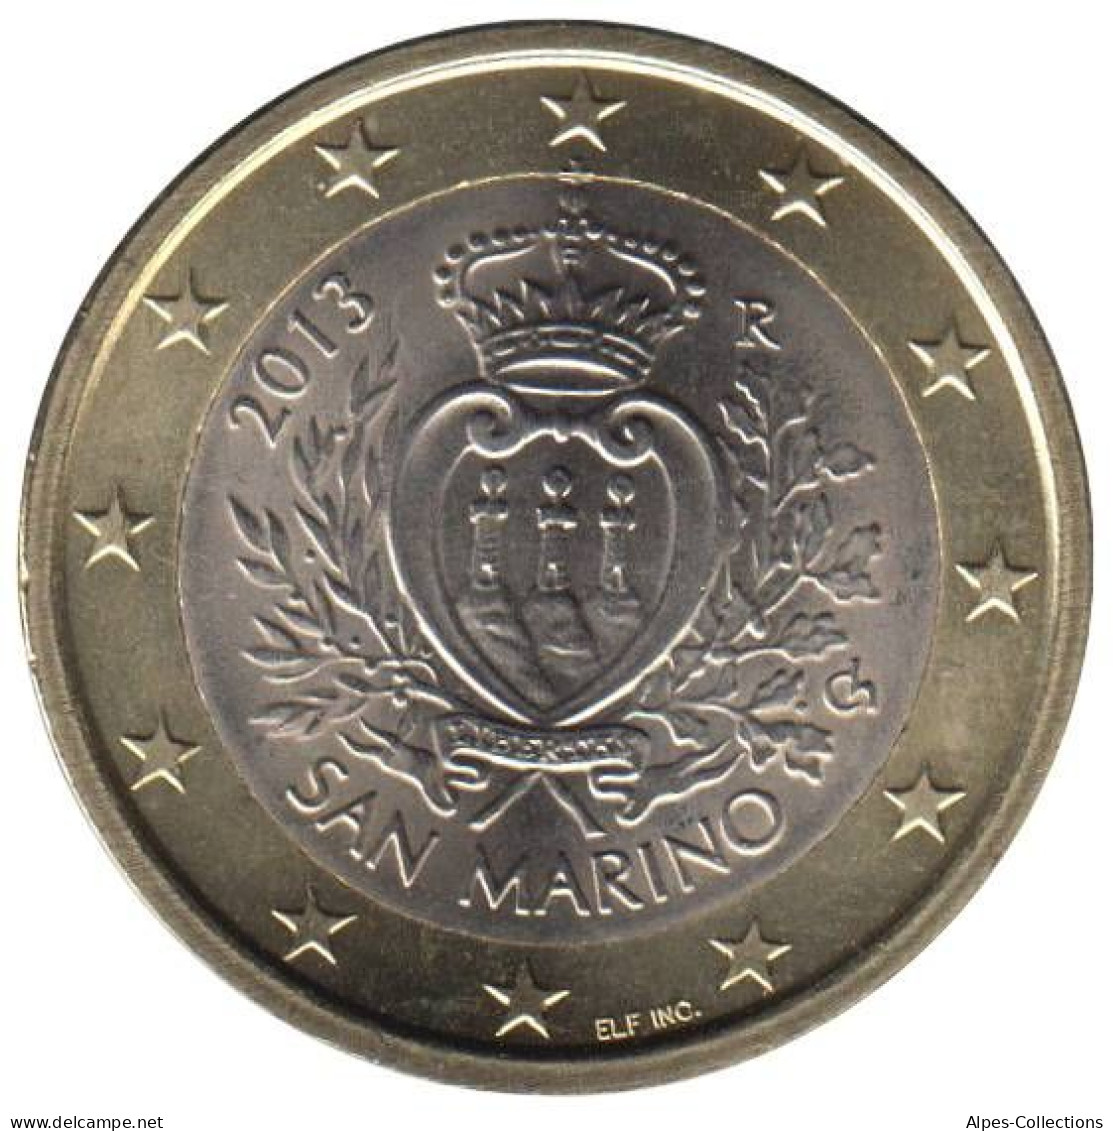 SA10013.1 - SAINT MARIN - 1 Euro - 2013 - San Marino